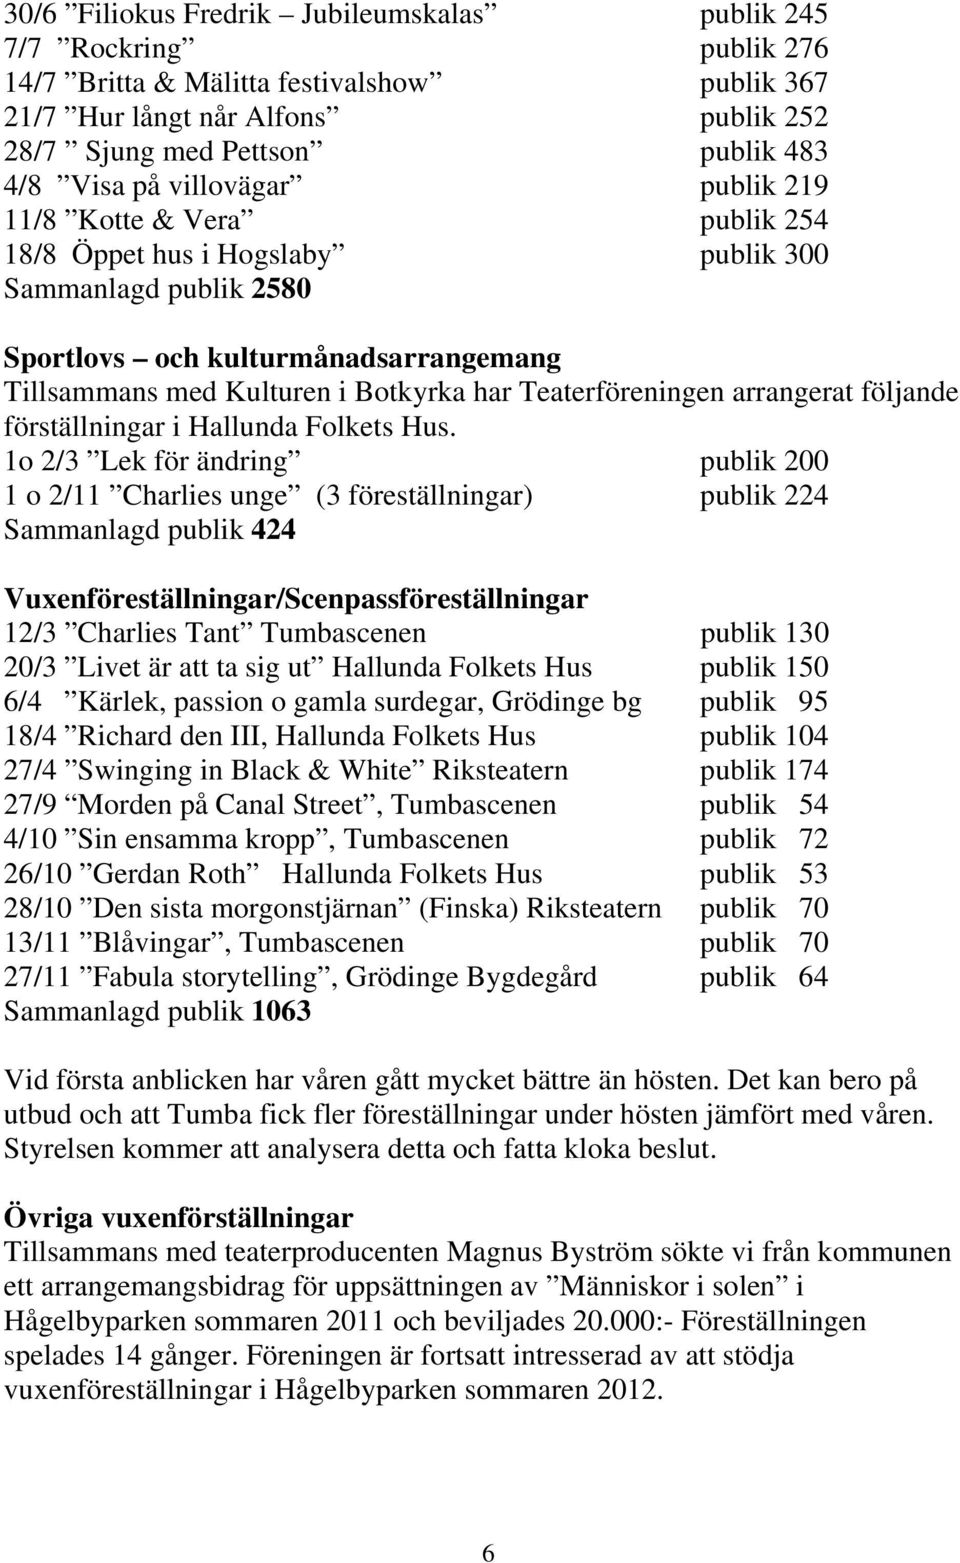 Teaterföreningen arrangerat följande förställningar i Hallunda Folkets Hus.